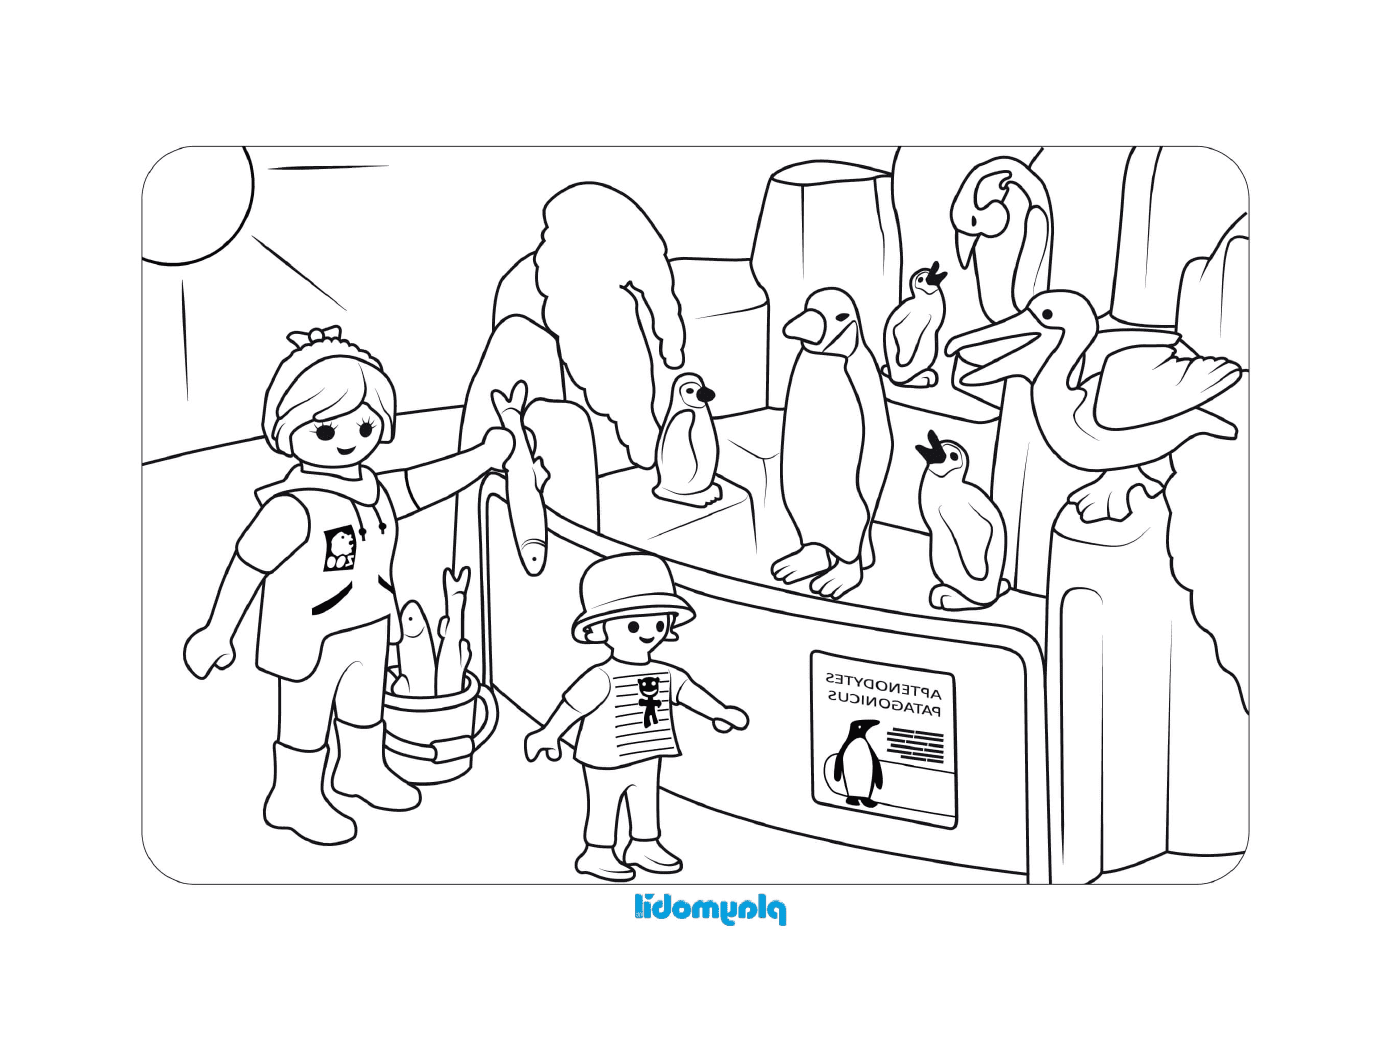  Muchos pingüinos en esta escena Playmobil 